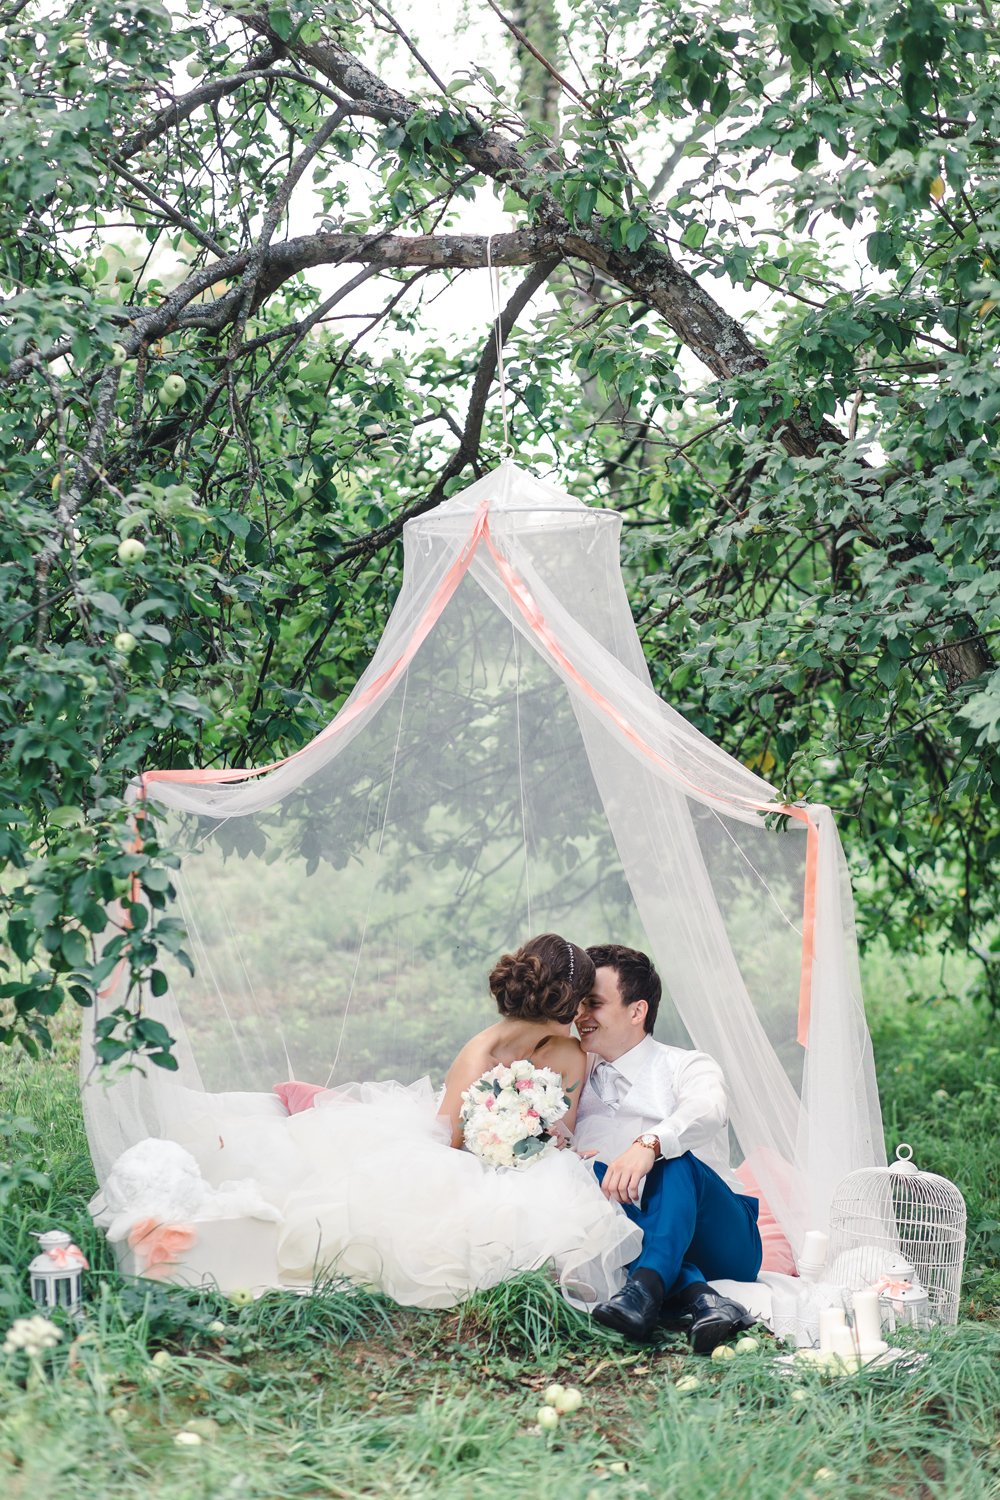 Воздушный шатер под яблоней с мягкими пледами, подушками и красивыми аксессуарами